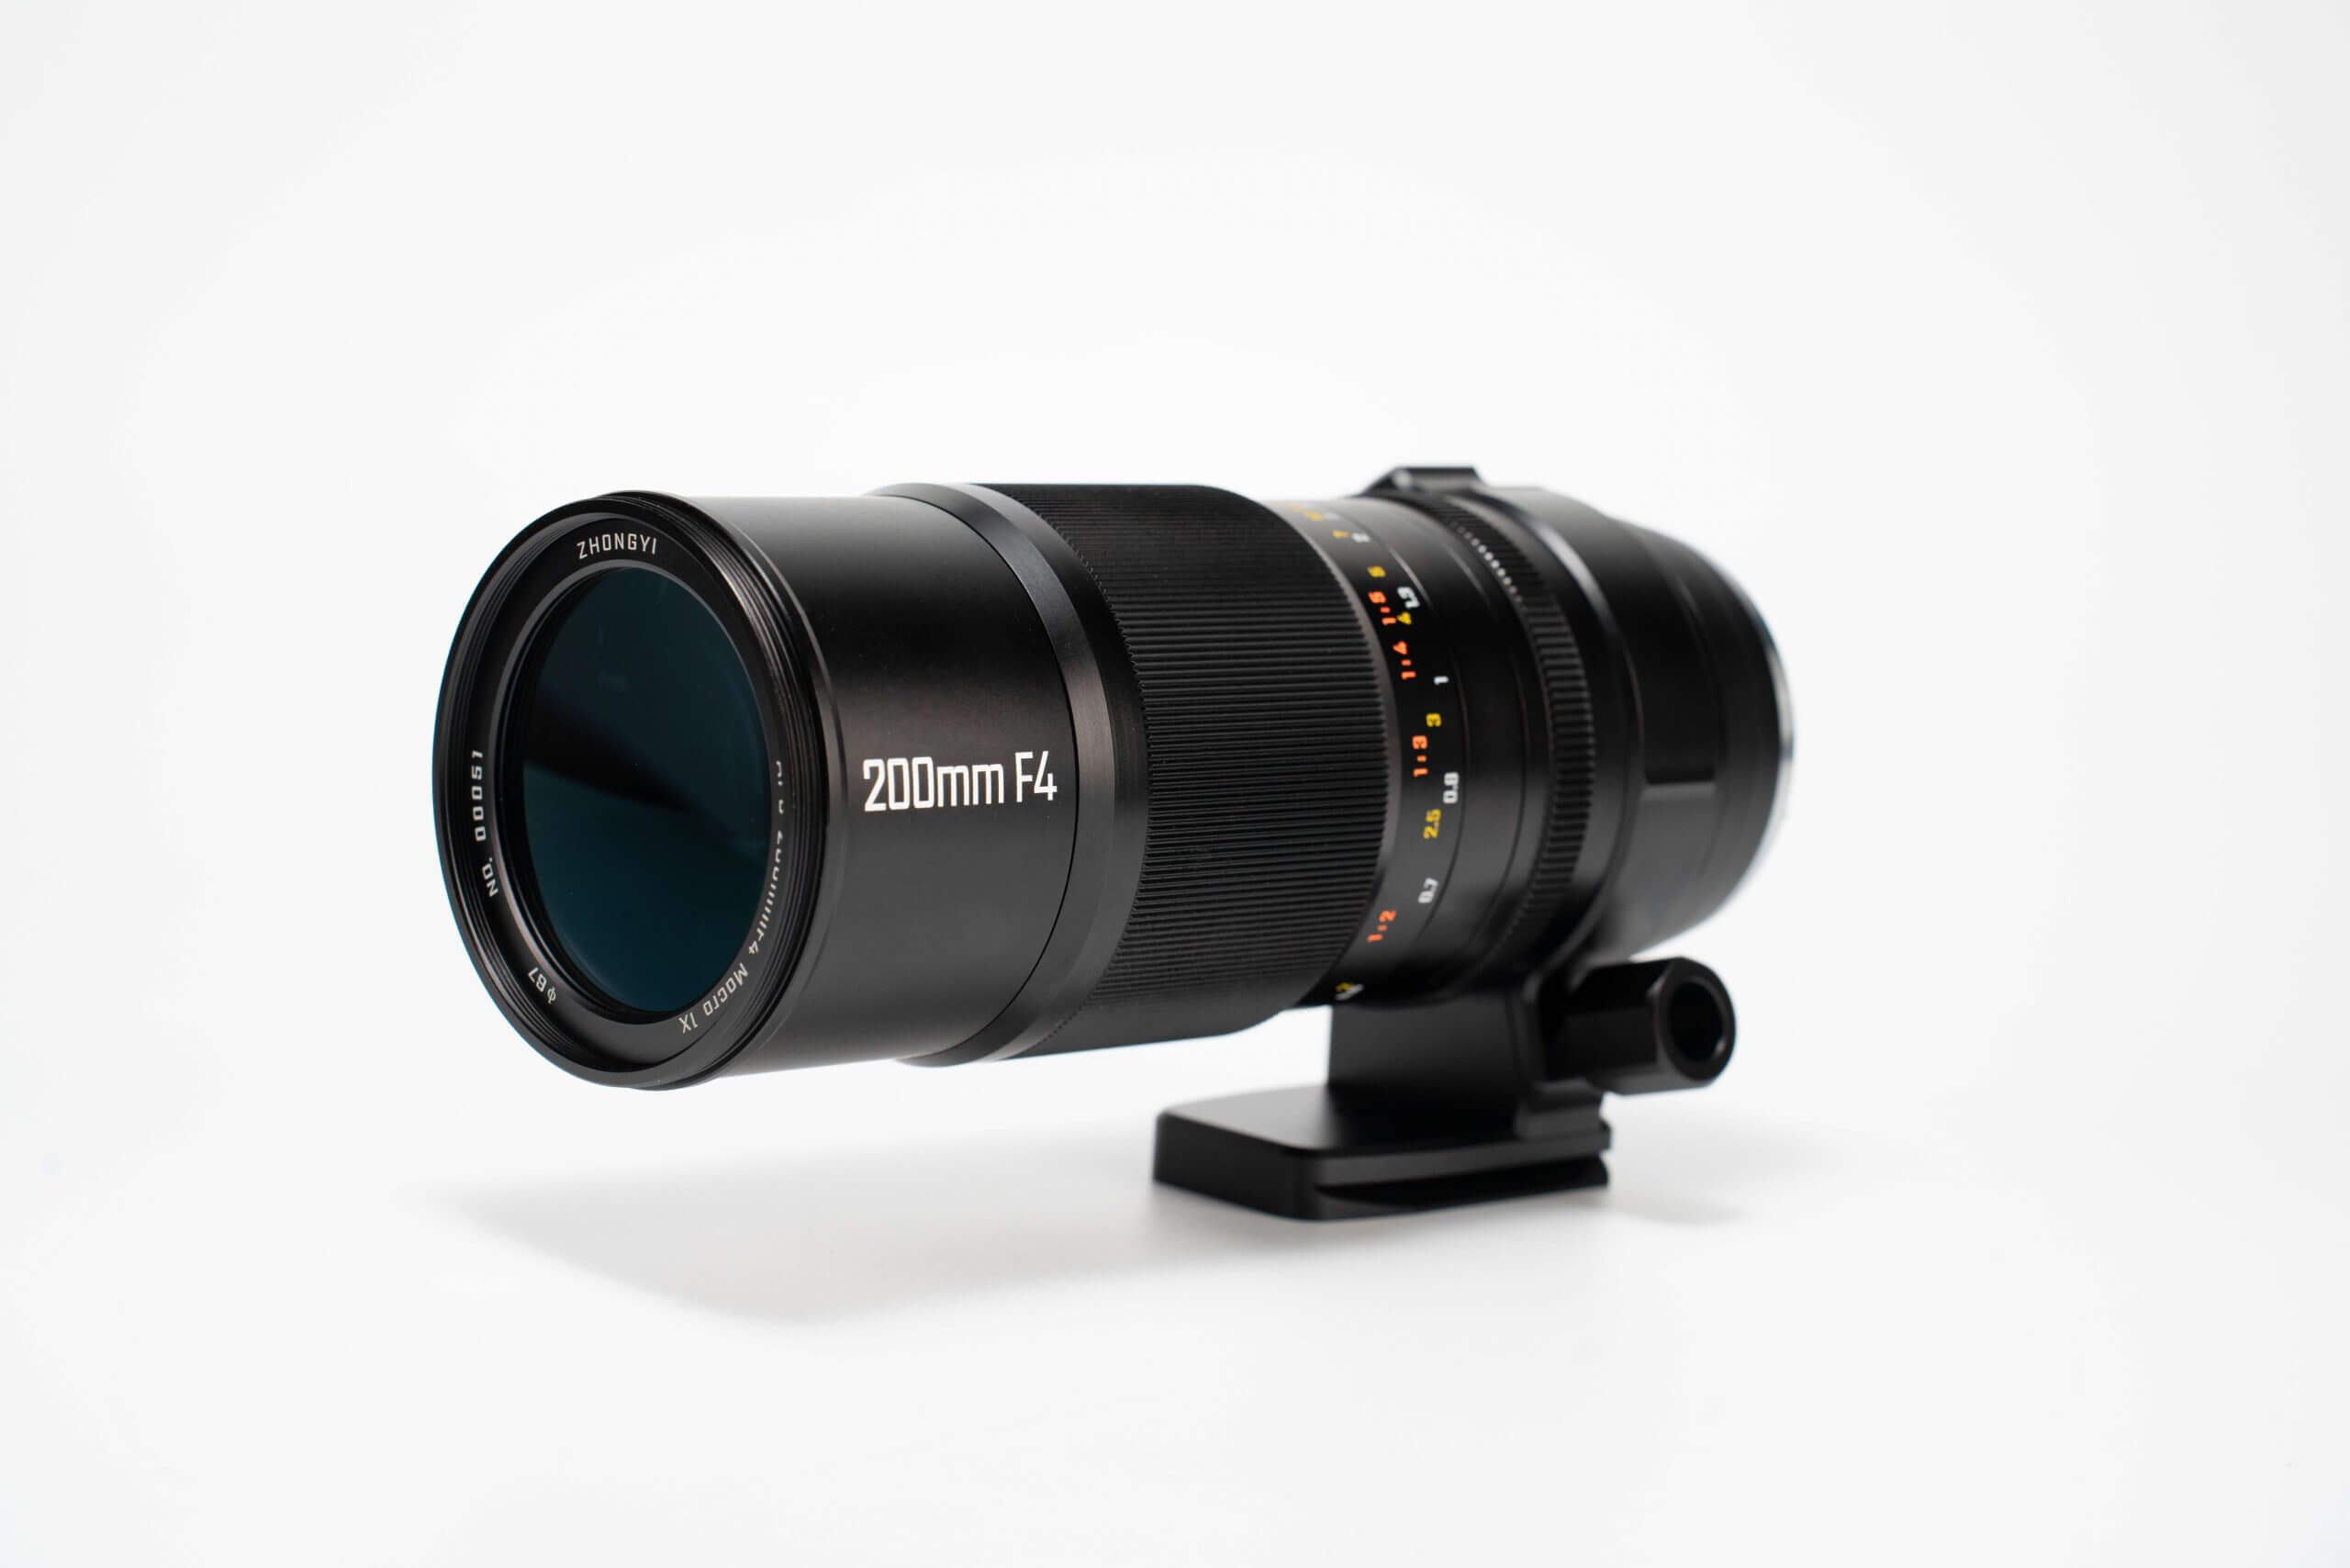 mitakon200f4apomacro 5 scaled - Zhong Yi Optics officially announces the Mitakon 200mm F/4 APO Macro Lens